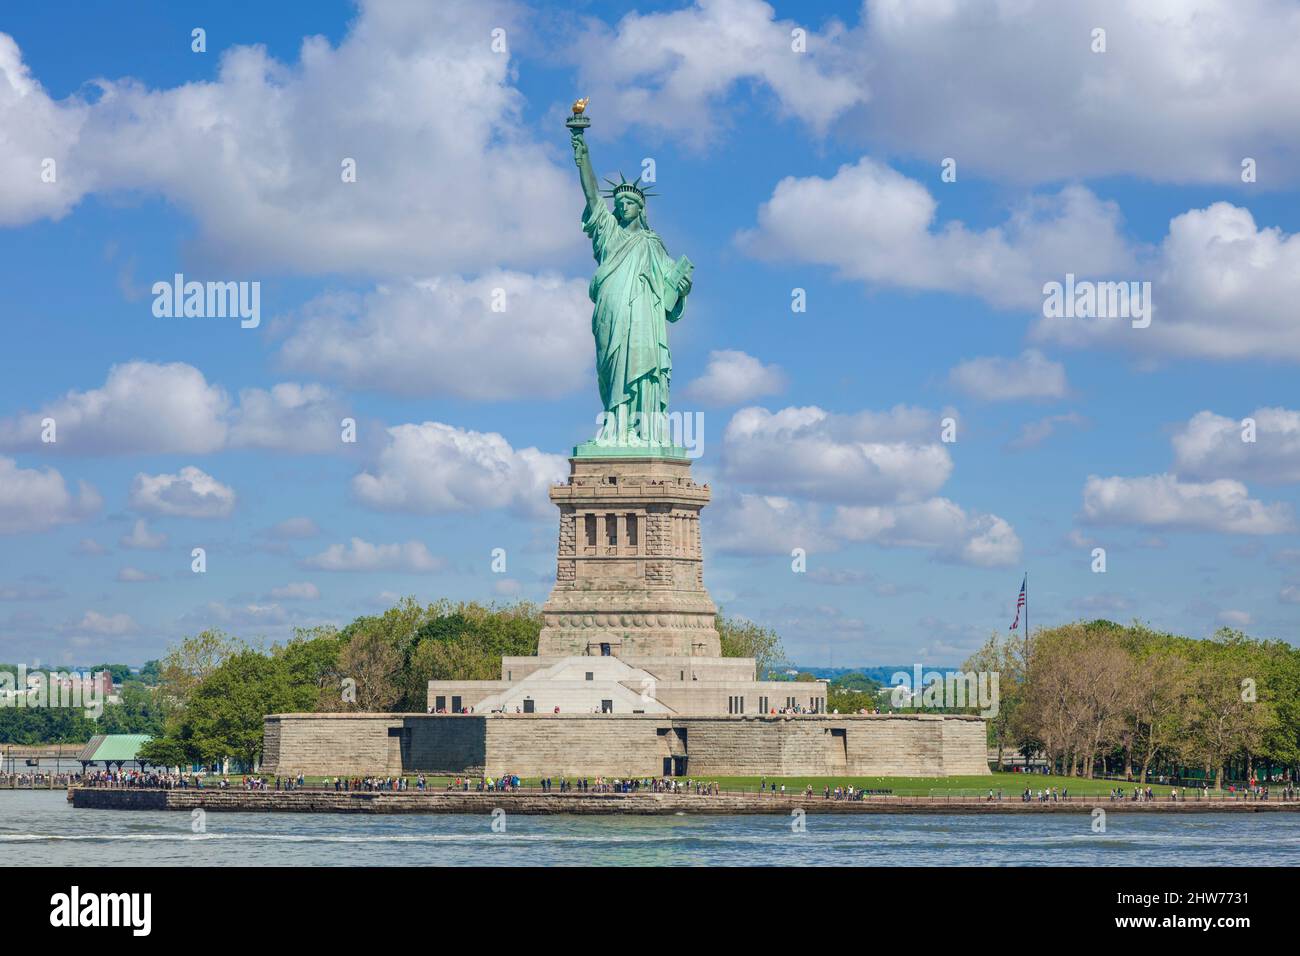 Statua della libertà New York Statua della libertà New York città Statua della libertà isola New york stato usa stati uniti d'america cielo blu nuvole bianche Foto Stock